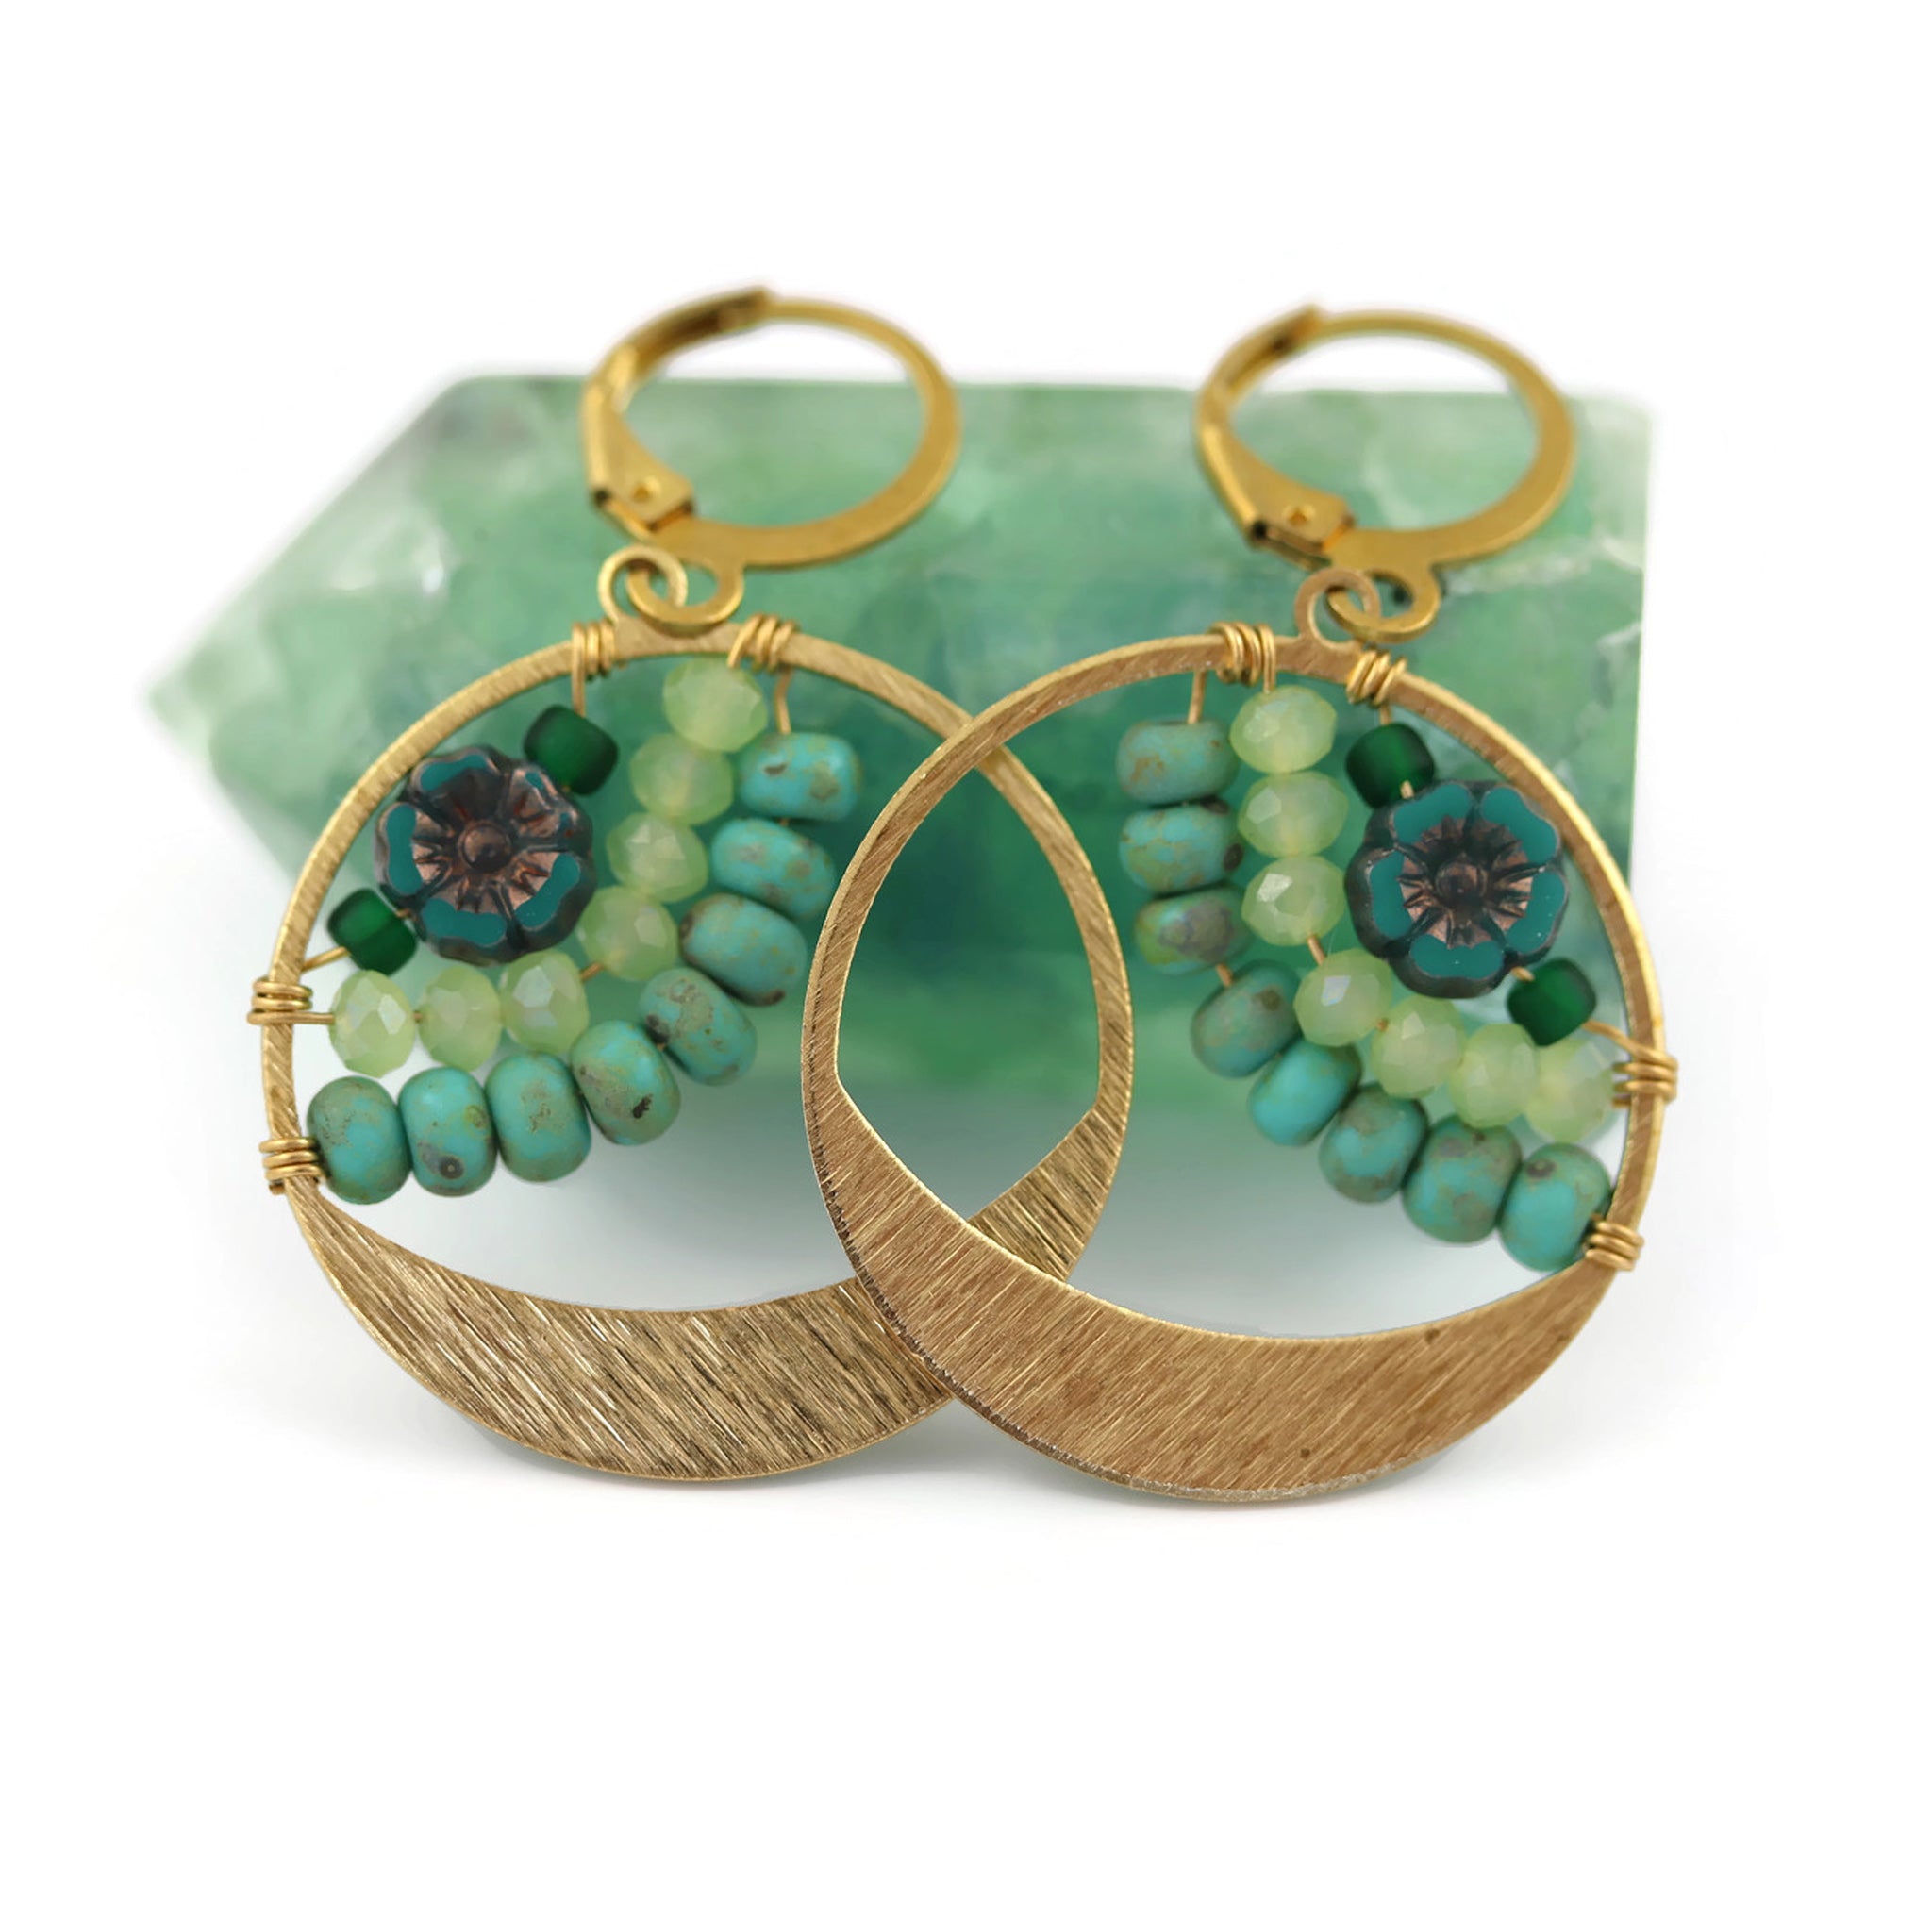 Golden Brass Little Bloom Earrings Turquoise Hues - Sienna Grace Jewelry